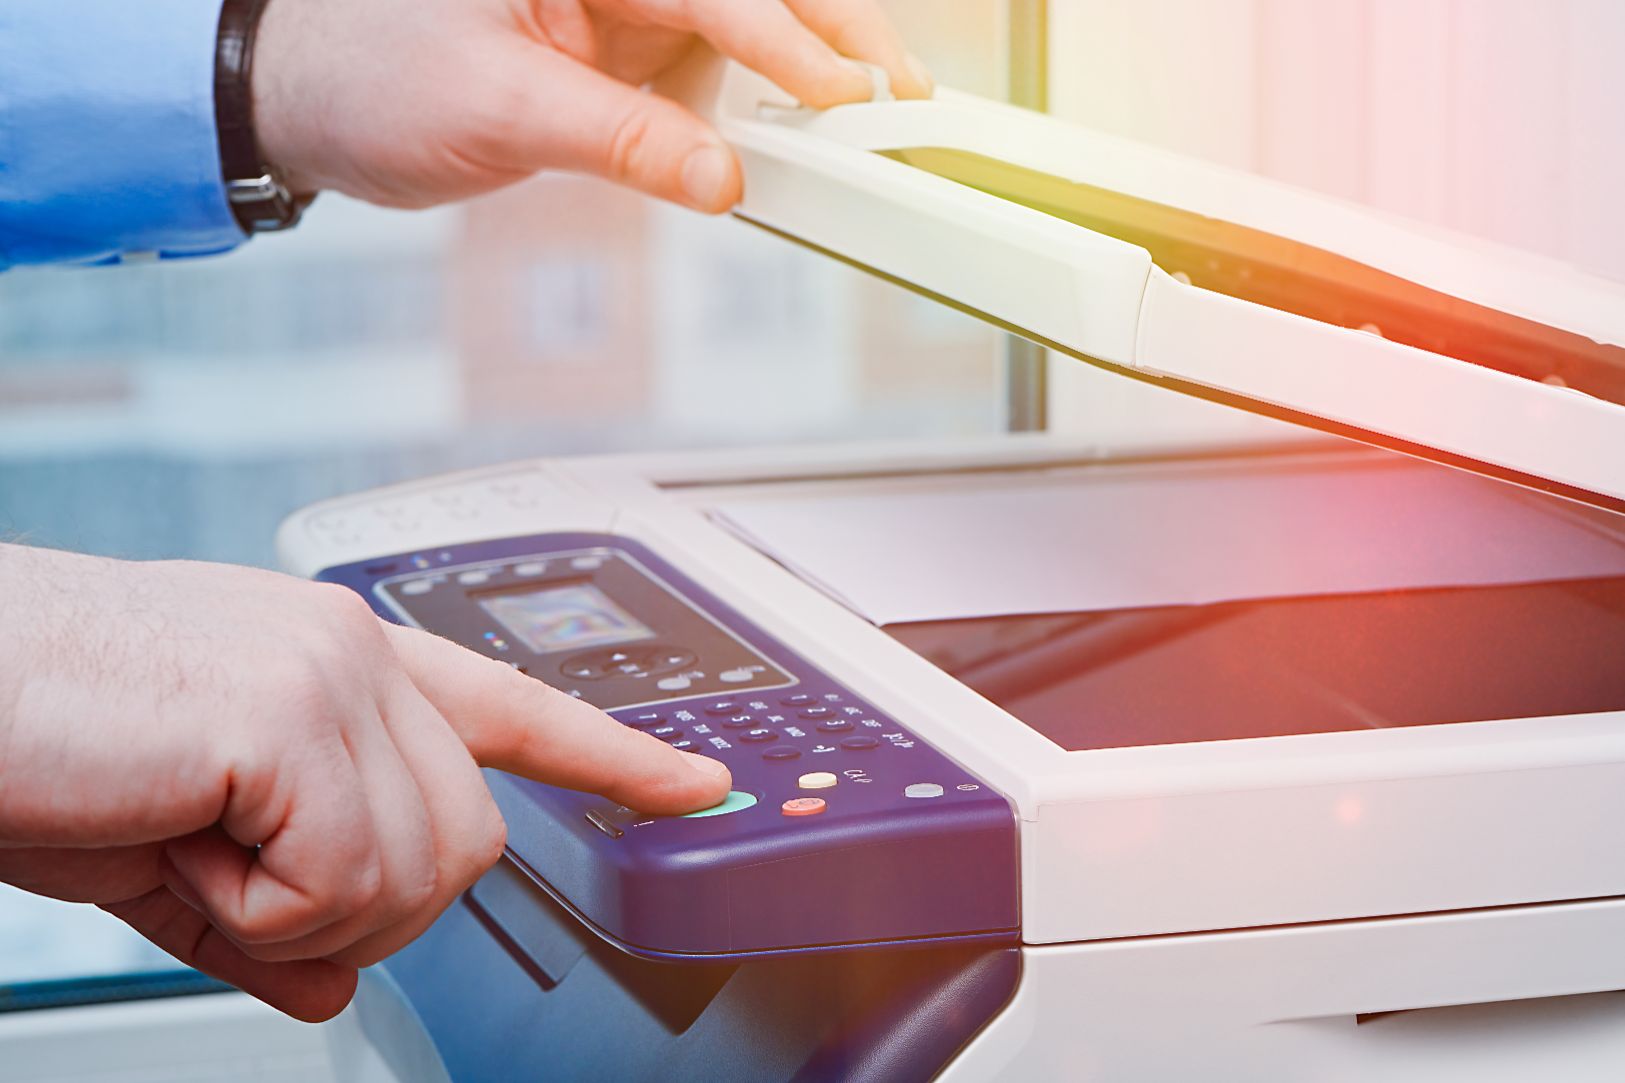 Thuê máy photocopy giá rẻ luôn giúp người dùng tiết kiệm được một khoản tiền